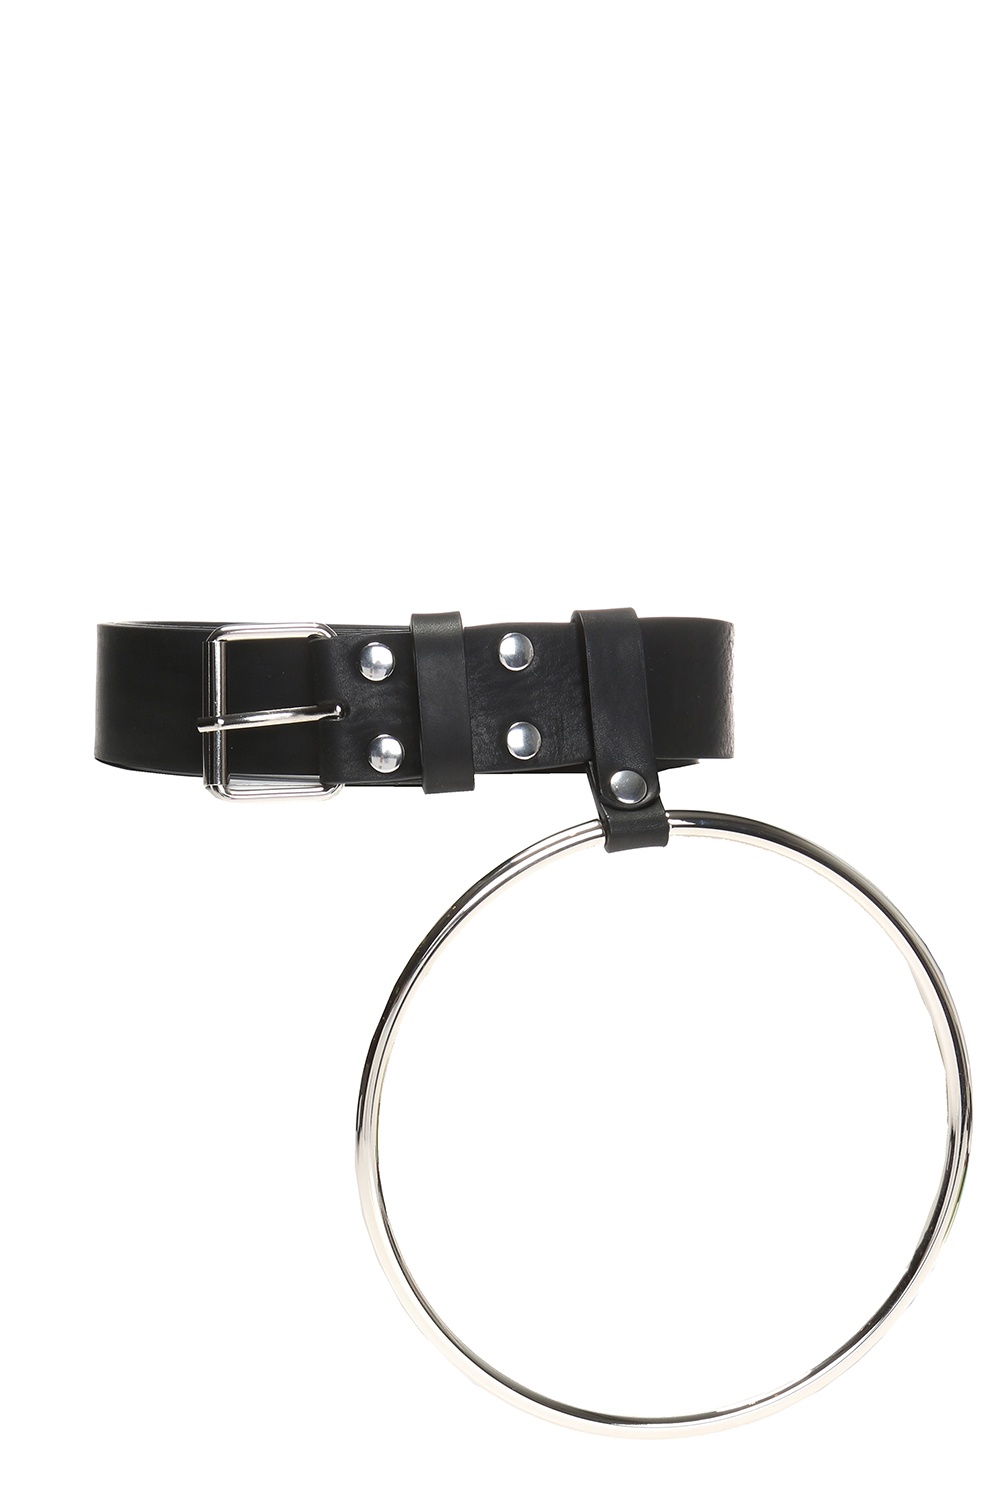 VETEMENTS Belt with metal ring | Women's Accessories | Vitkac